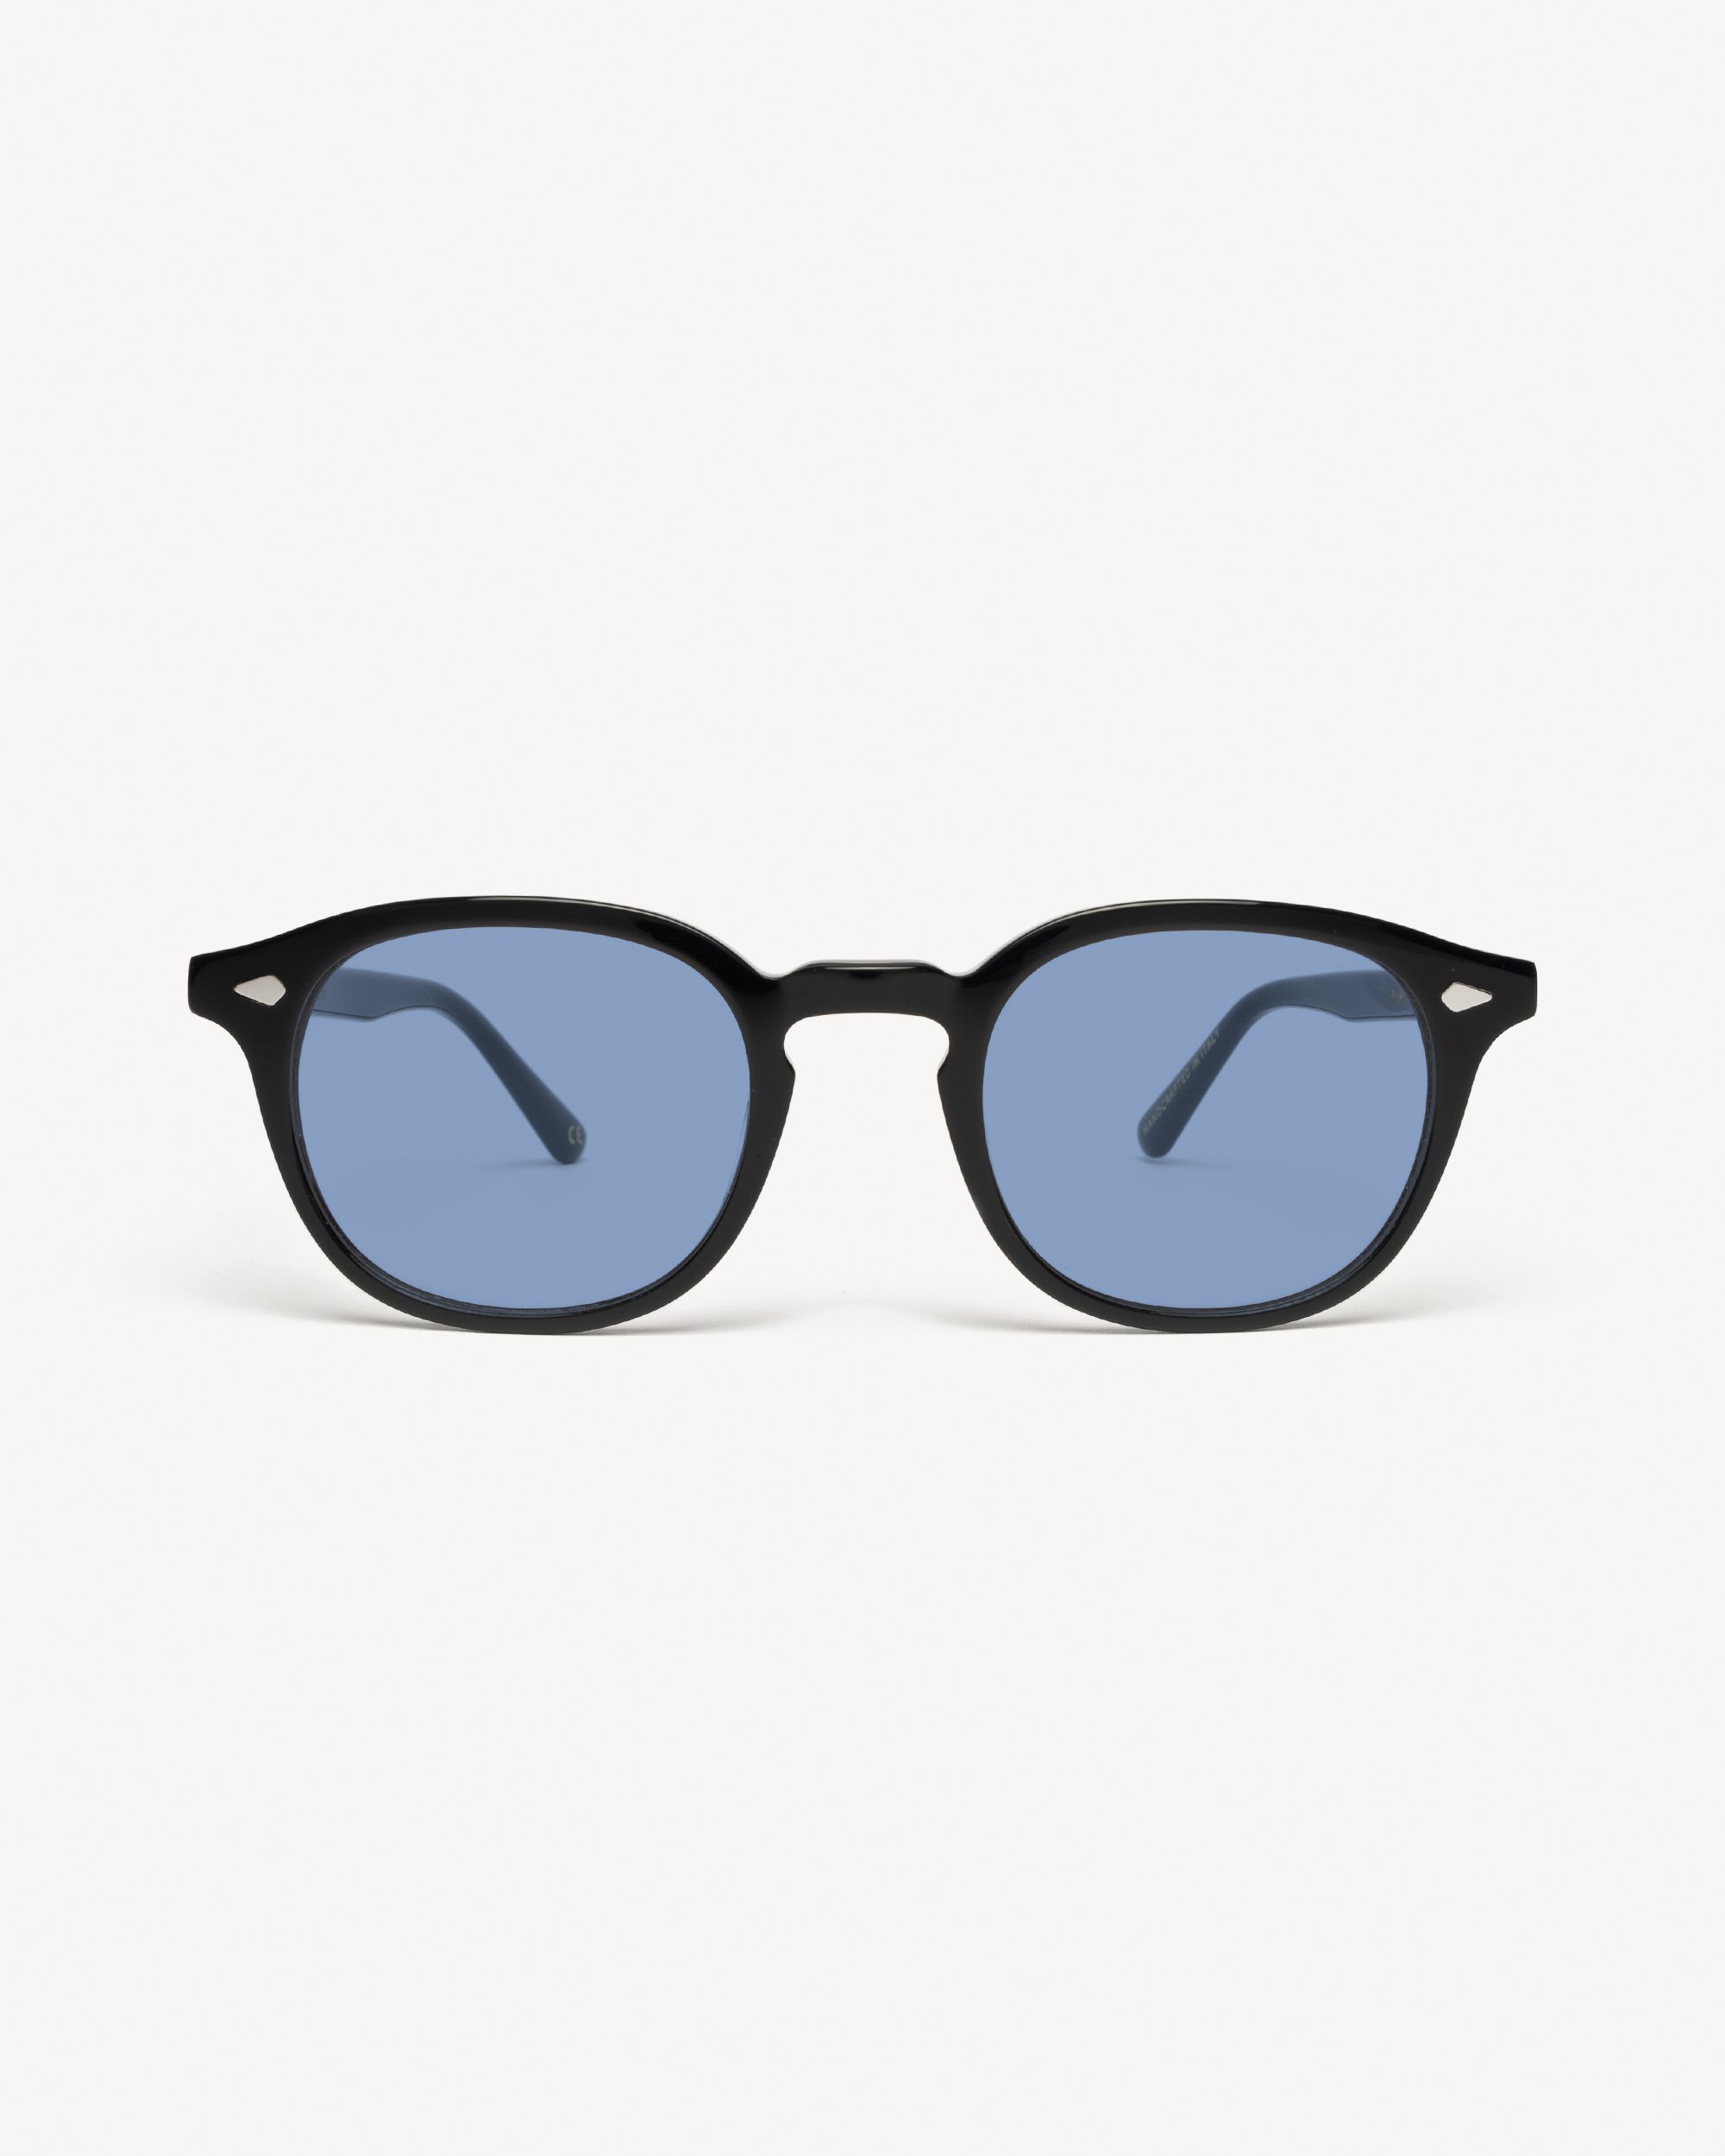 Vintage Color Blind Red lens Sunglasses Mens Black Acetate Glasses Good  Gift | eBay